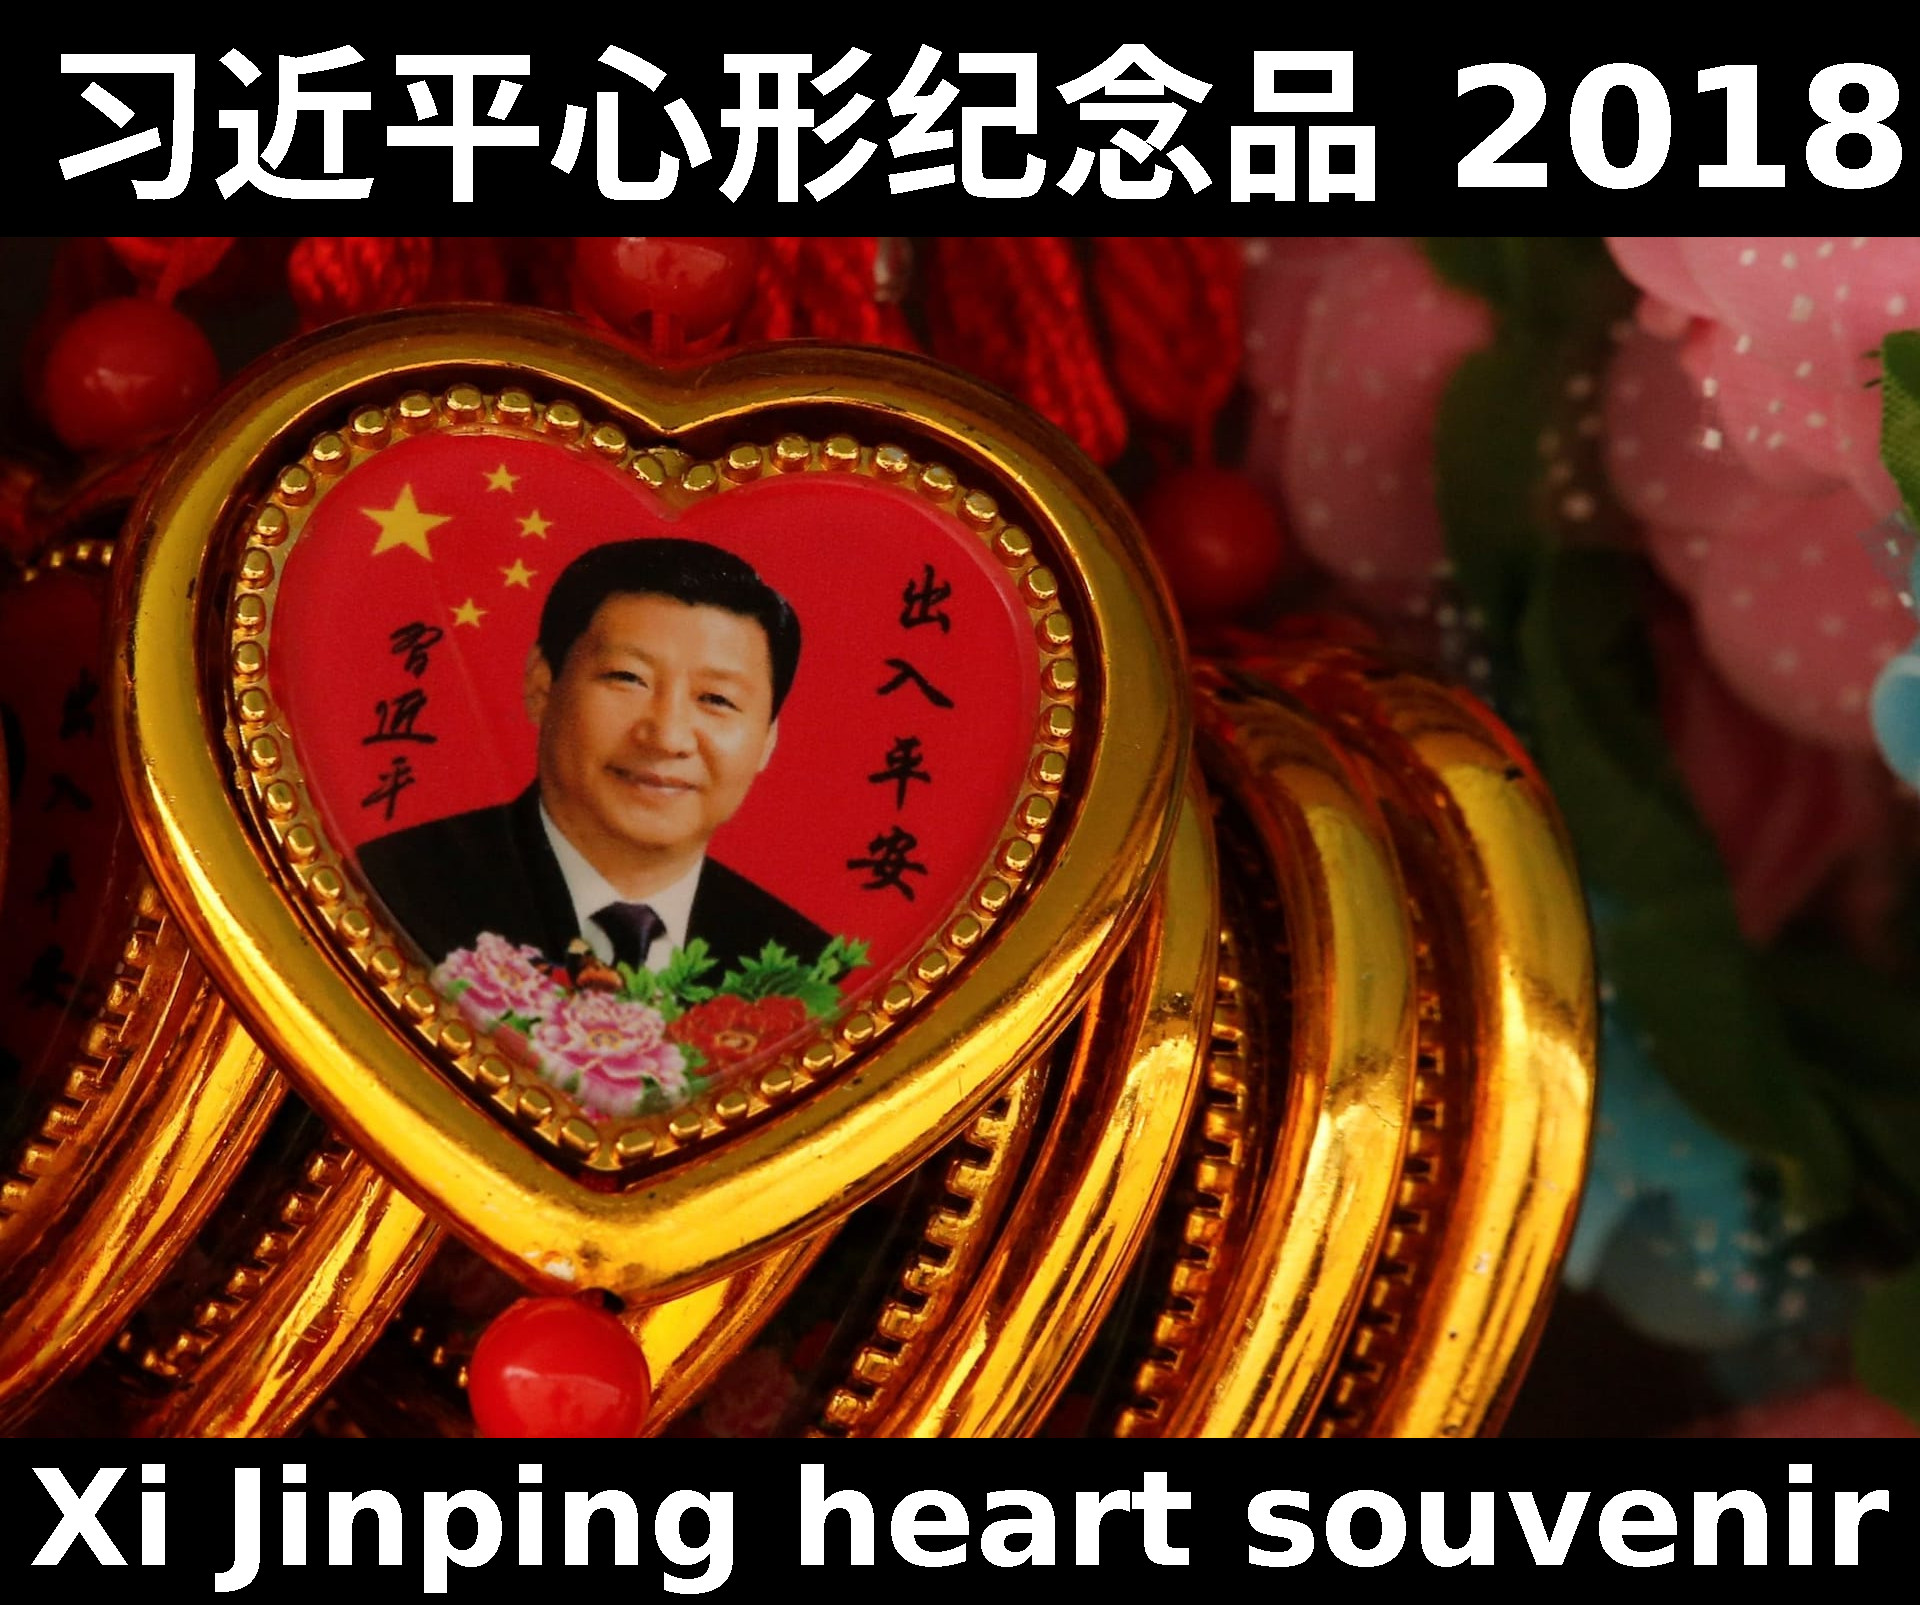 Xi Jinping heart